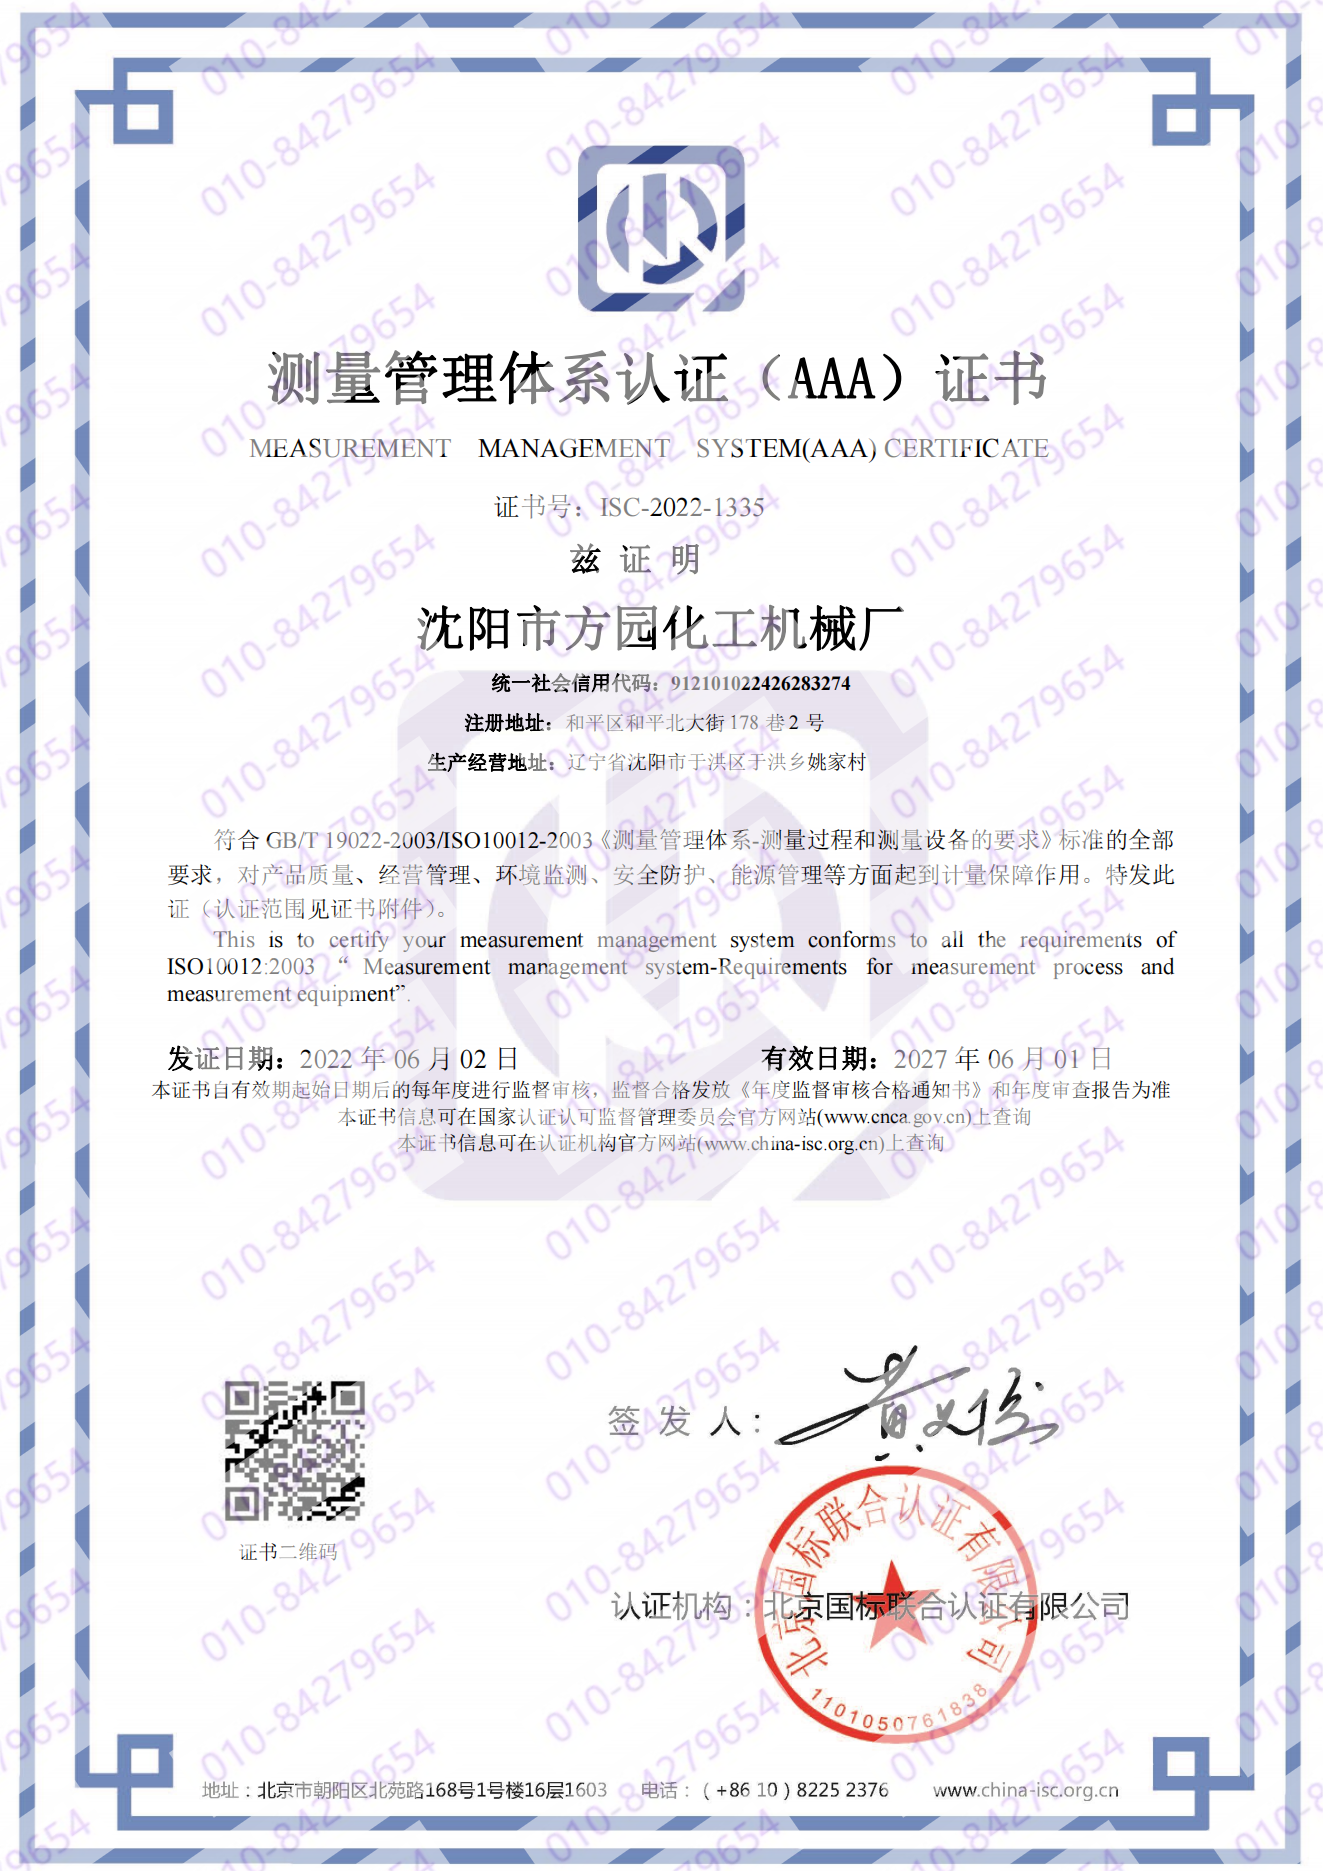 沈阳市方园化工机械厂  喜获“测量管理体系认证（AAA）证书”